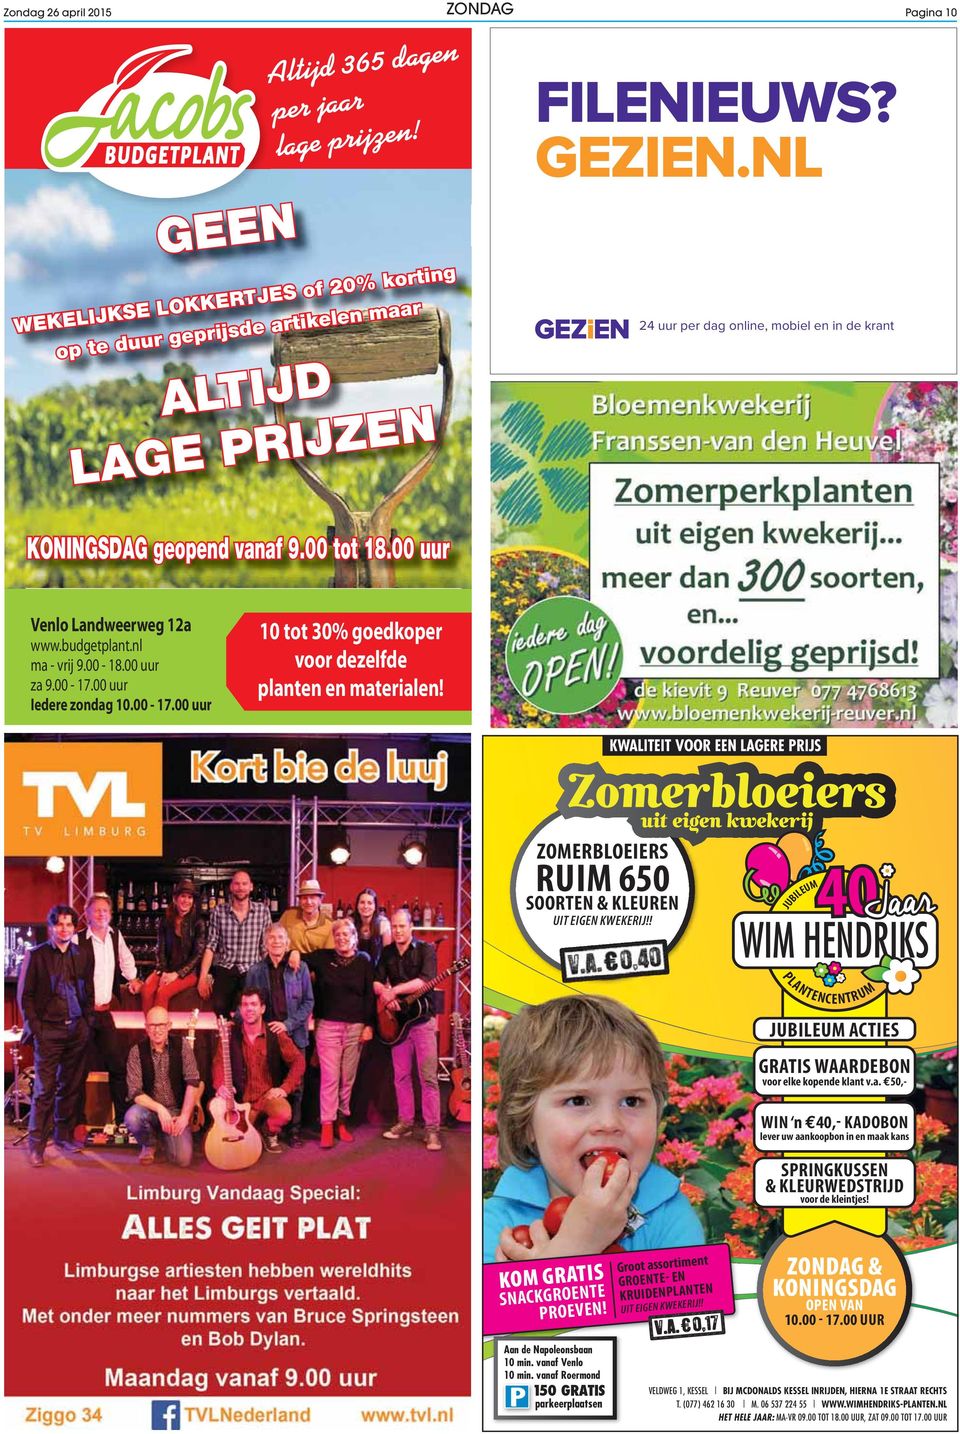 00 uur Venlo Landweerweg 12a www.budgetplant.nl ma - vrij 9.00-18.00 uur za 9.00-17.00 uur Iedere zondag 10.00-17.00 uur 10 tot 30% goedkoper voor dezelfde planten en materialen!